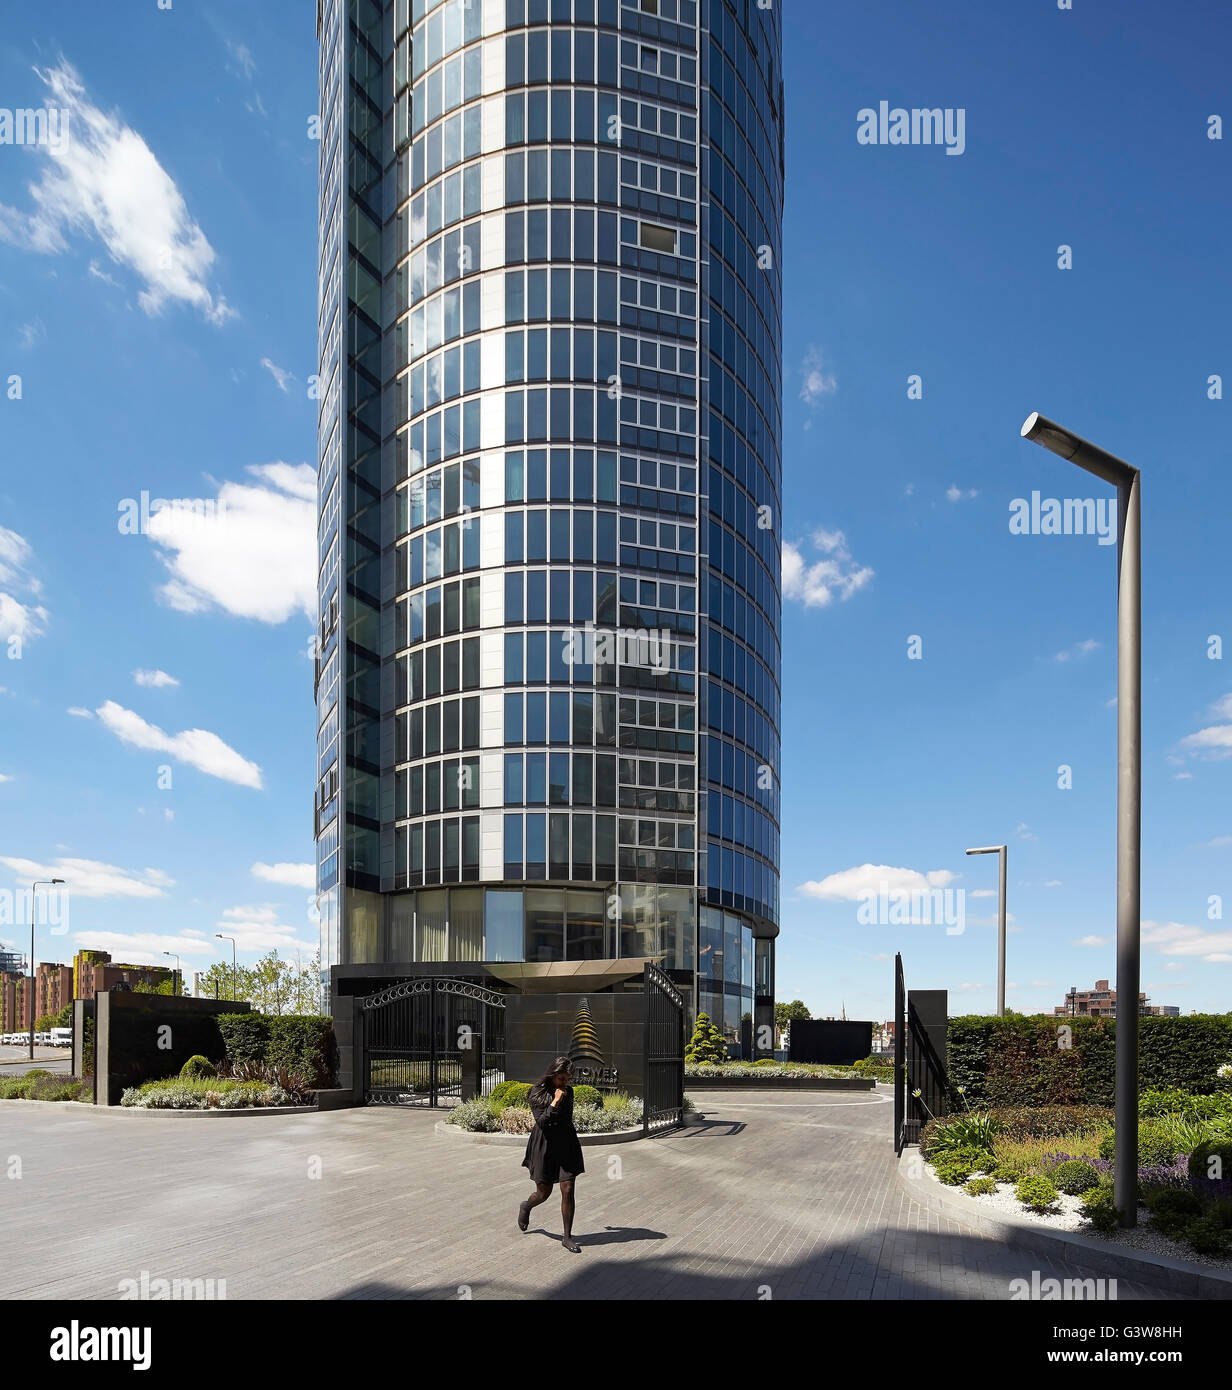 Puerta de entrada a la urbanización residencial. St George Wharf Tower, Londres, Reino Unido. Arquitecto: Broadway Malyan Limited, 2014. Foto de stock